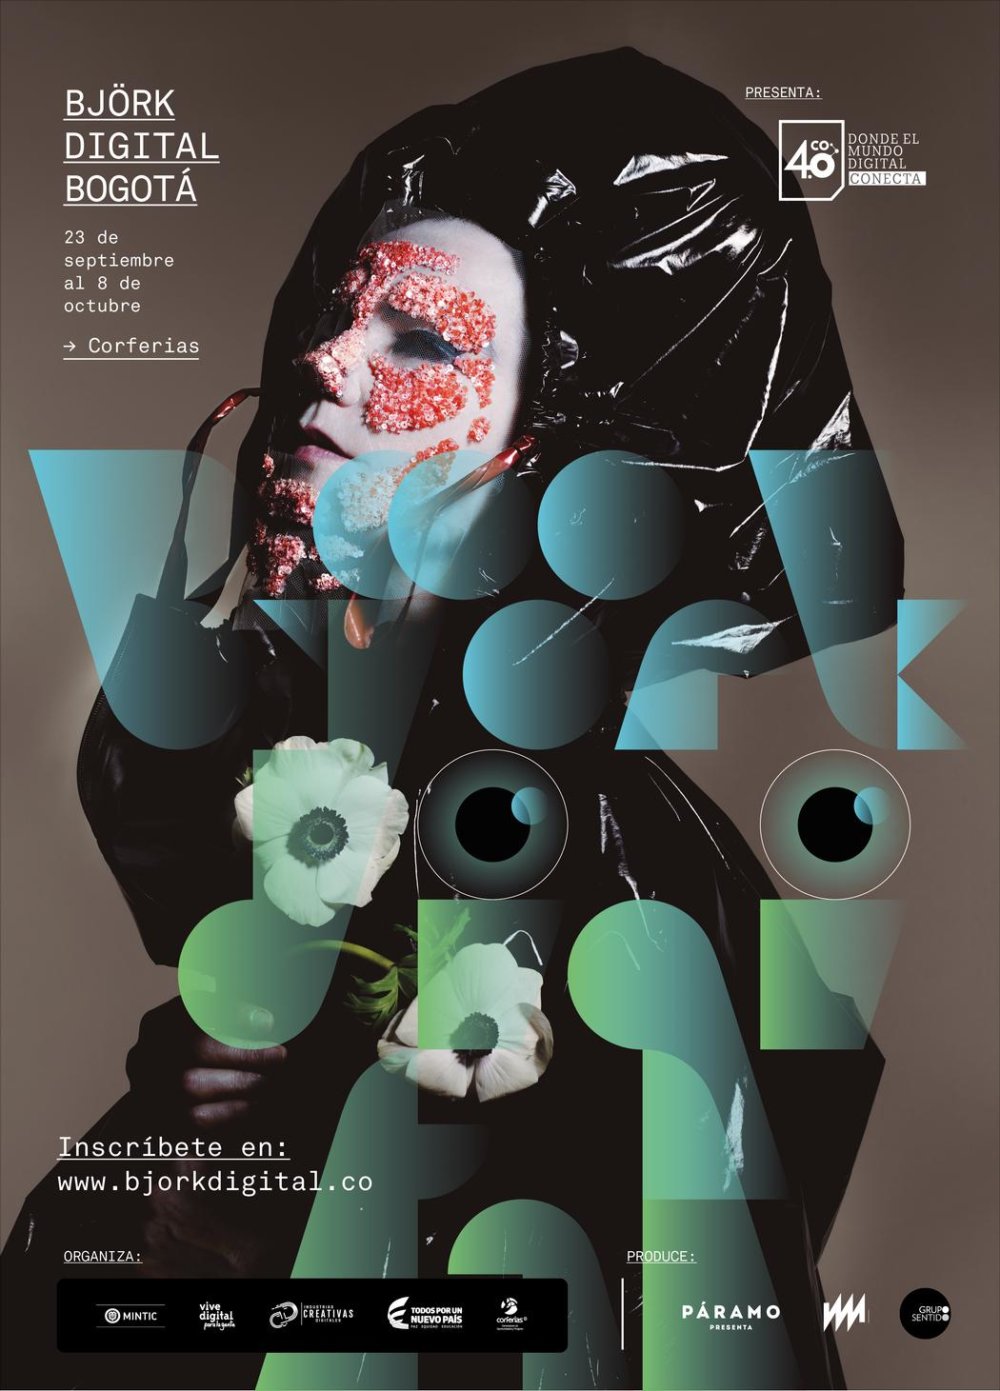  Un viaje por la mente de la artista Björk